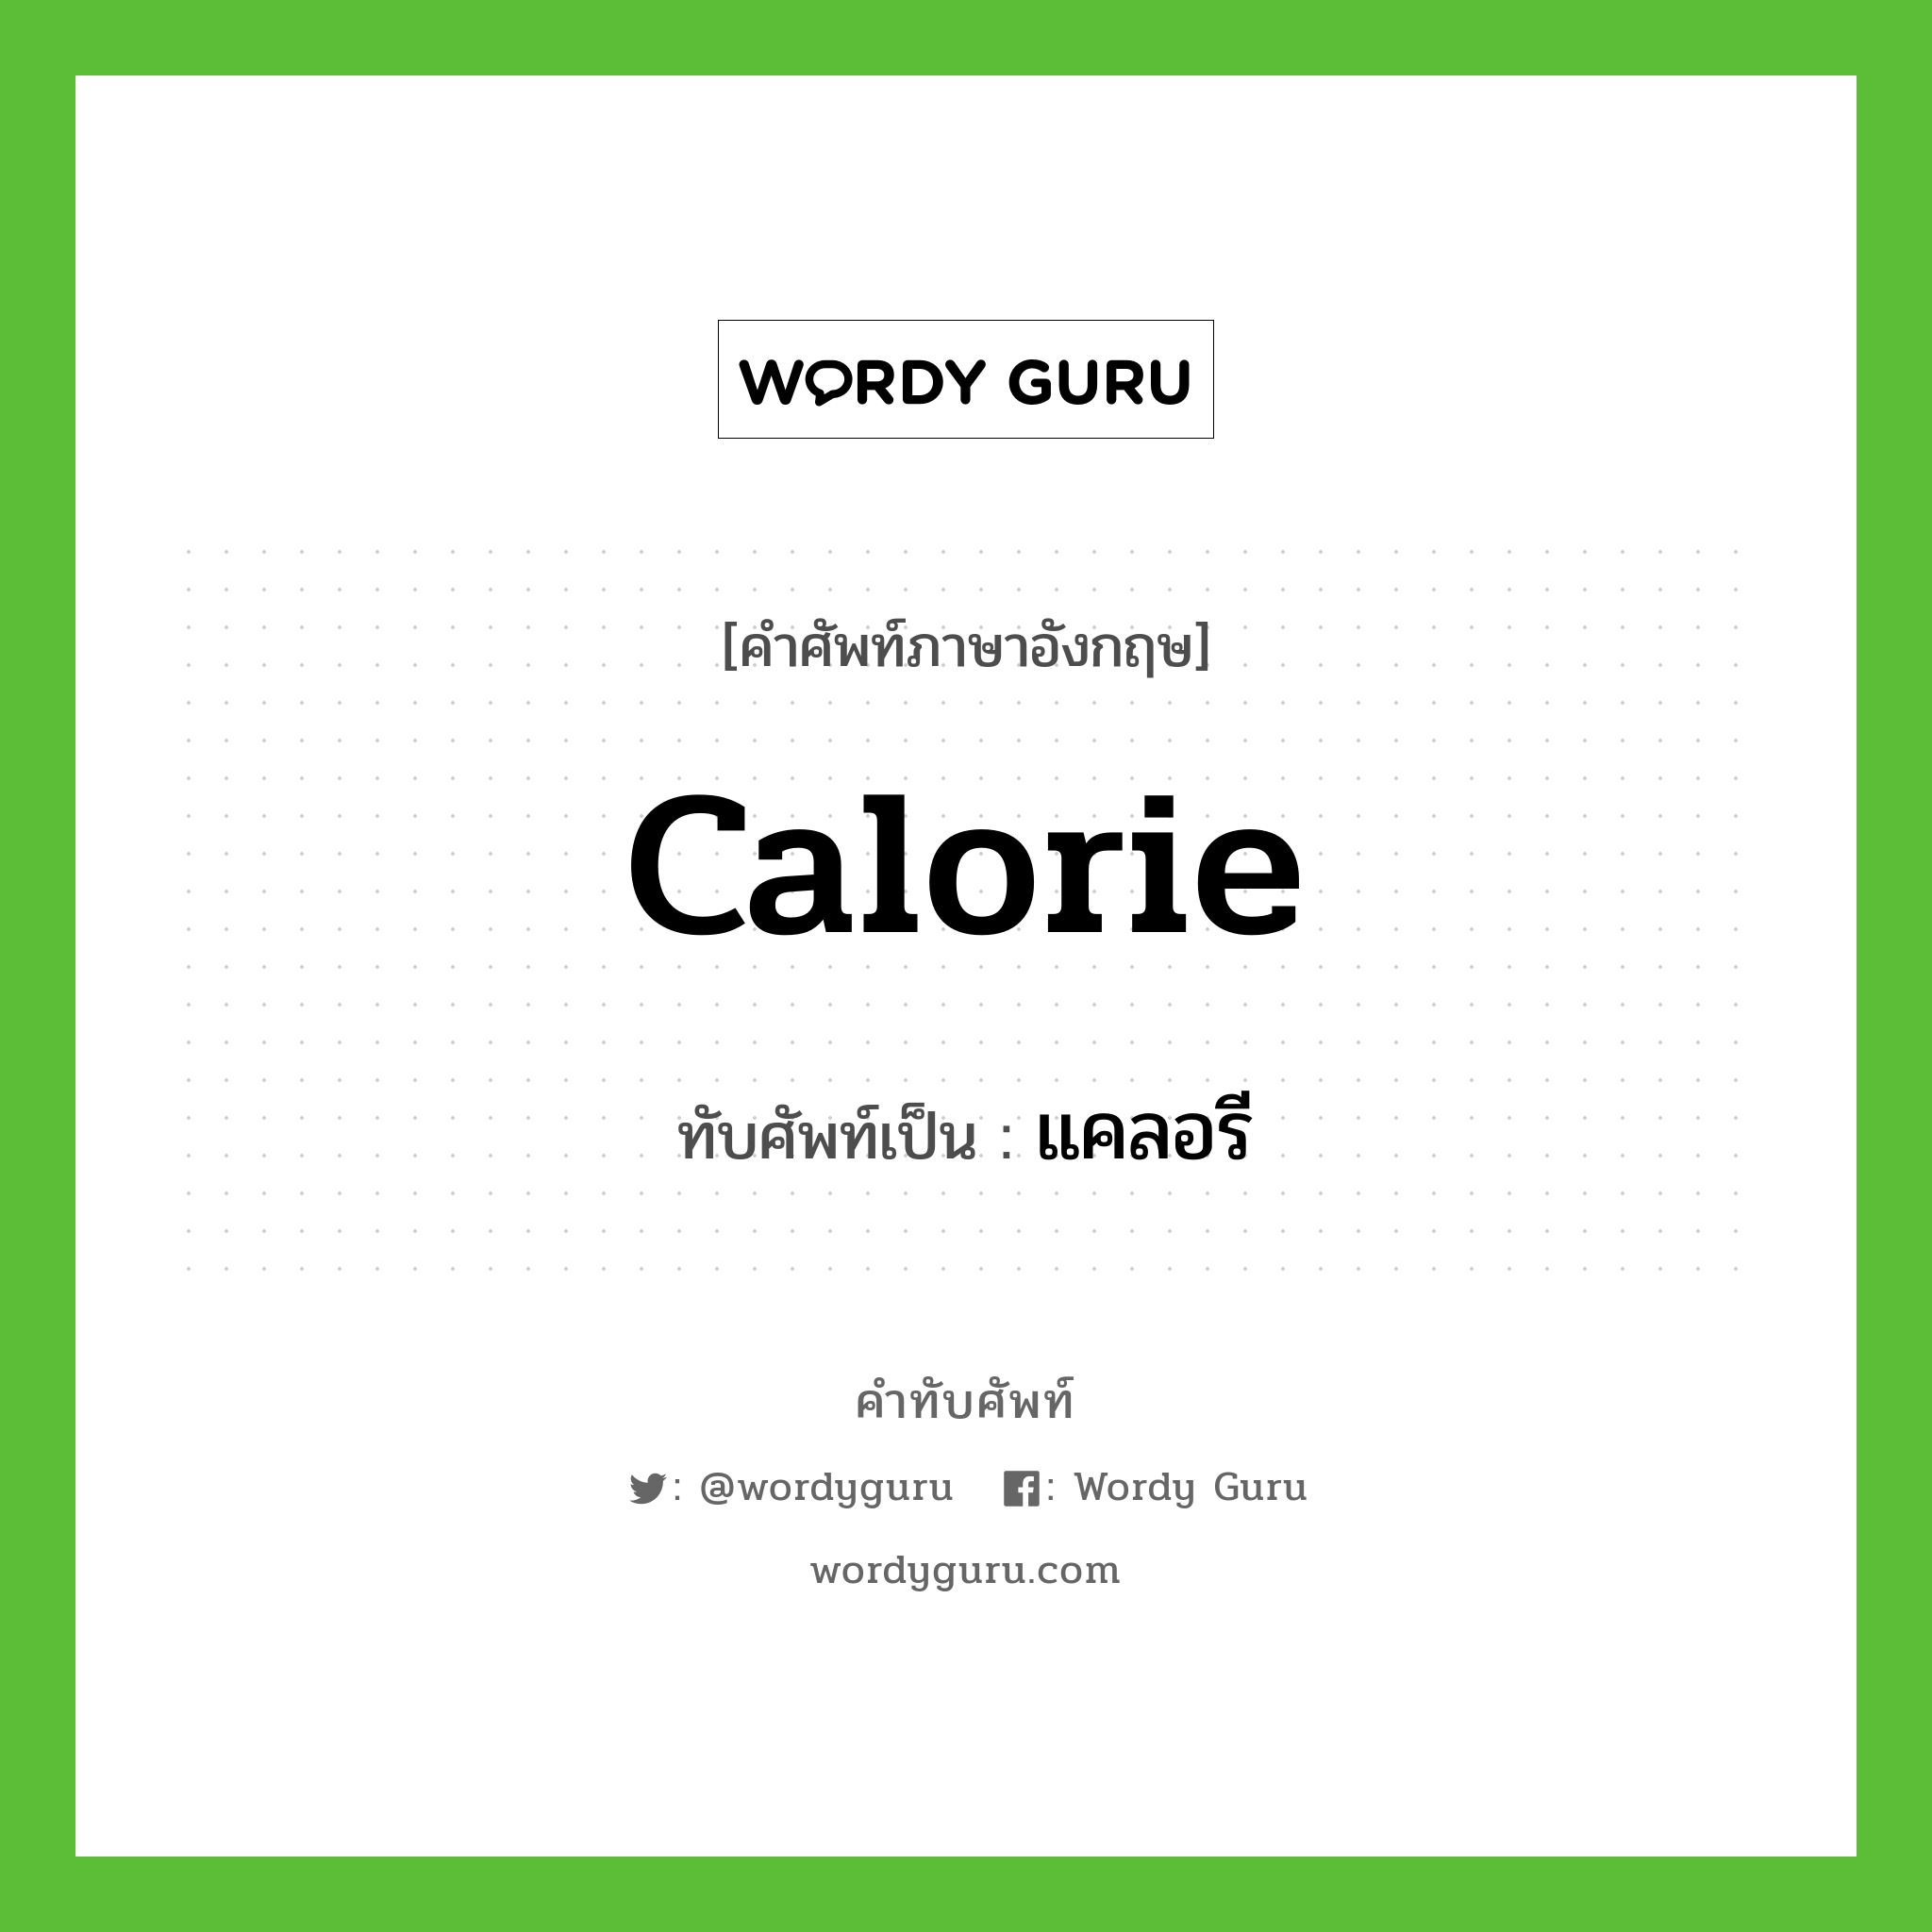 calorie เขียนเป็นคำไทยว่าอะไร?, คำศัพท์ภาษาอังกฤษ calorie ทับศัพท์เป็น แคลอรี